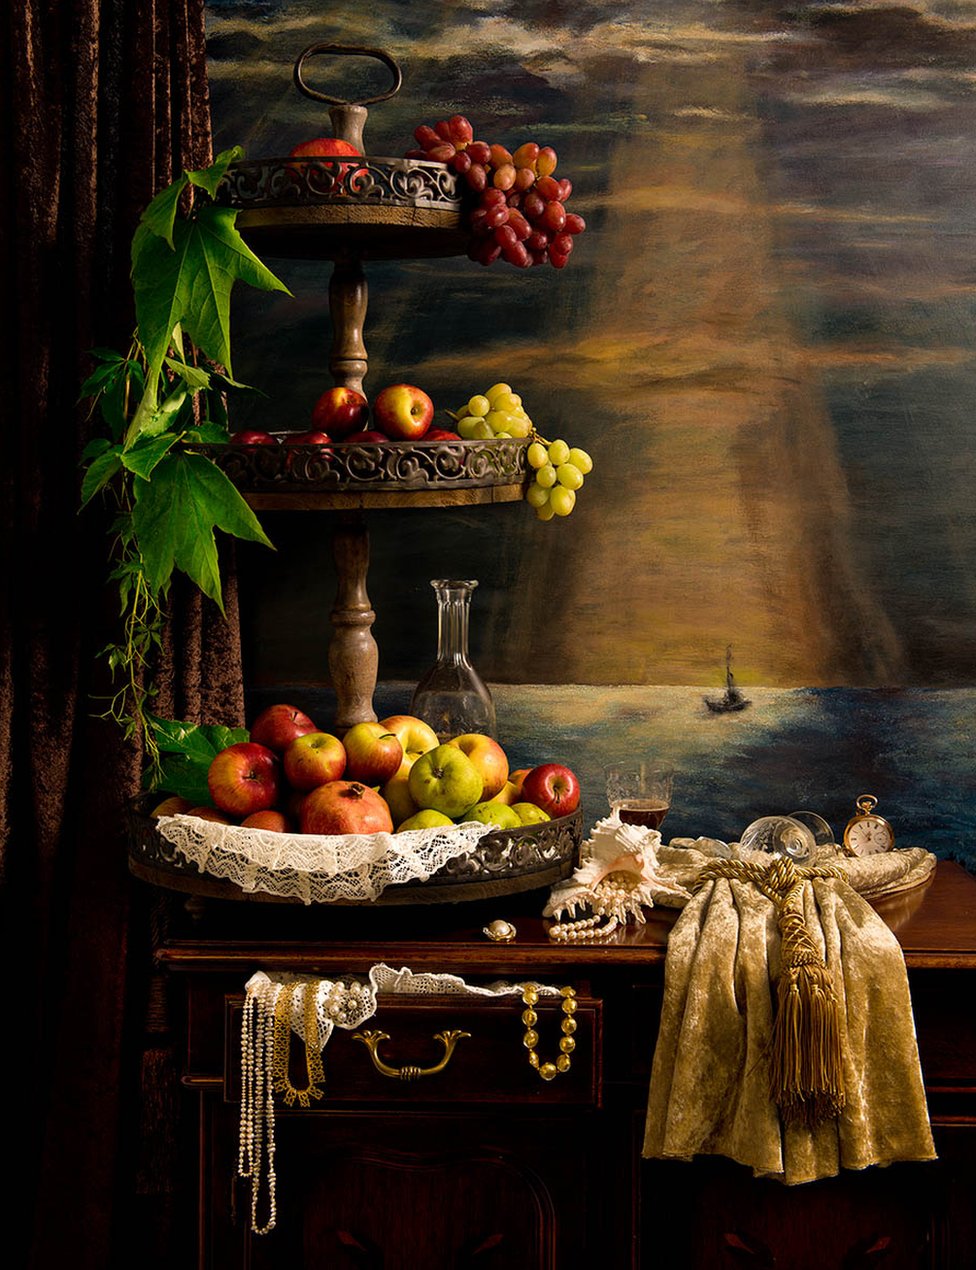 Деревянная подставка, покрытая фруктами, перед изображением корабля в море